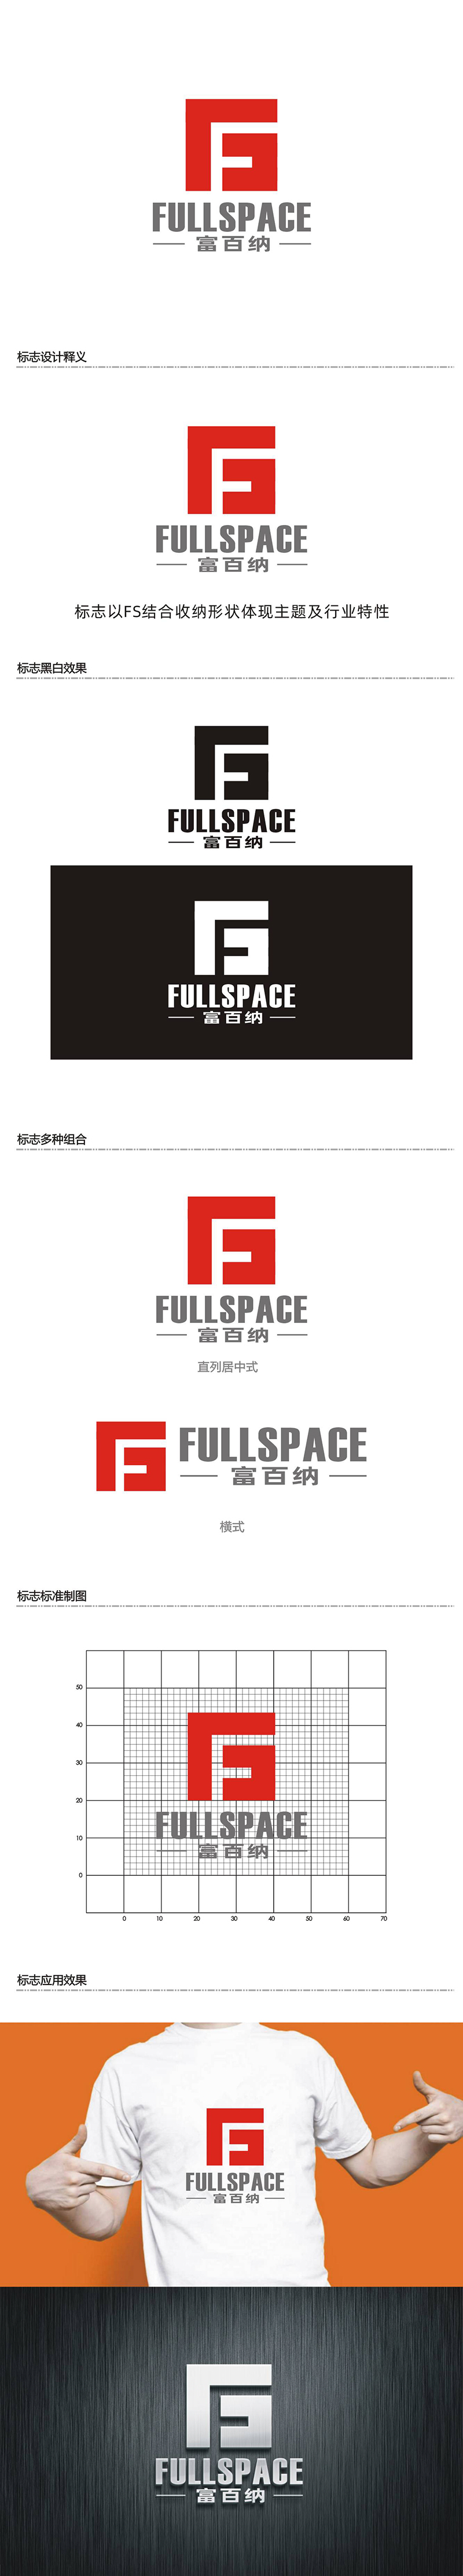 周都响的FullSpace富百纳logo设计